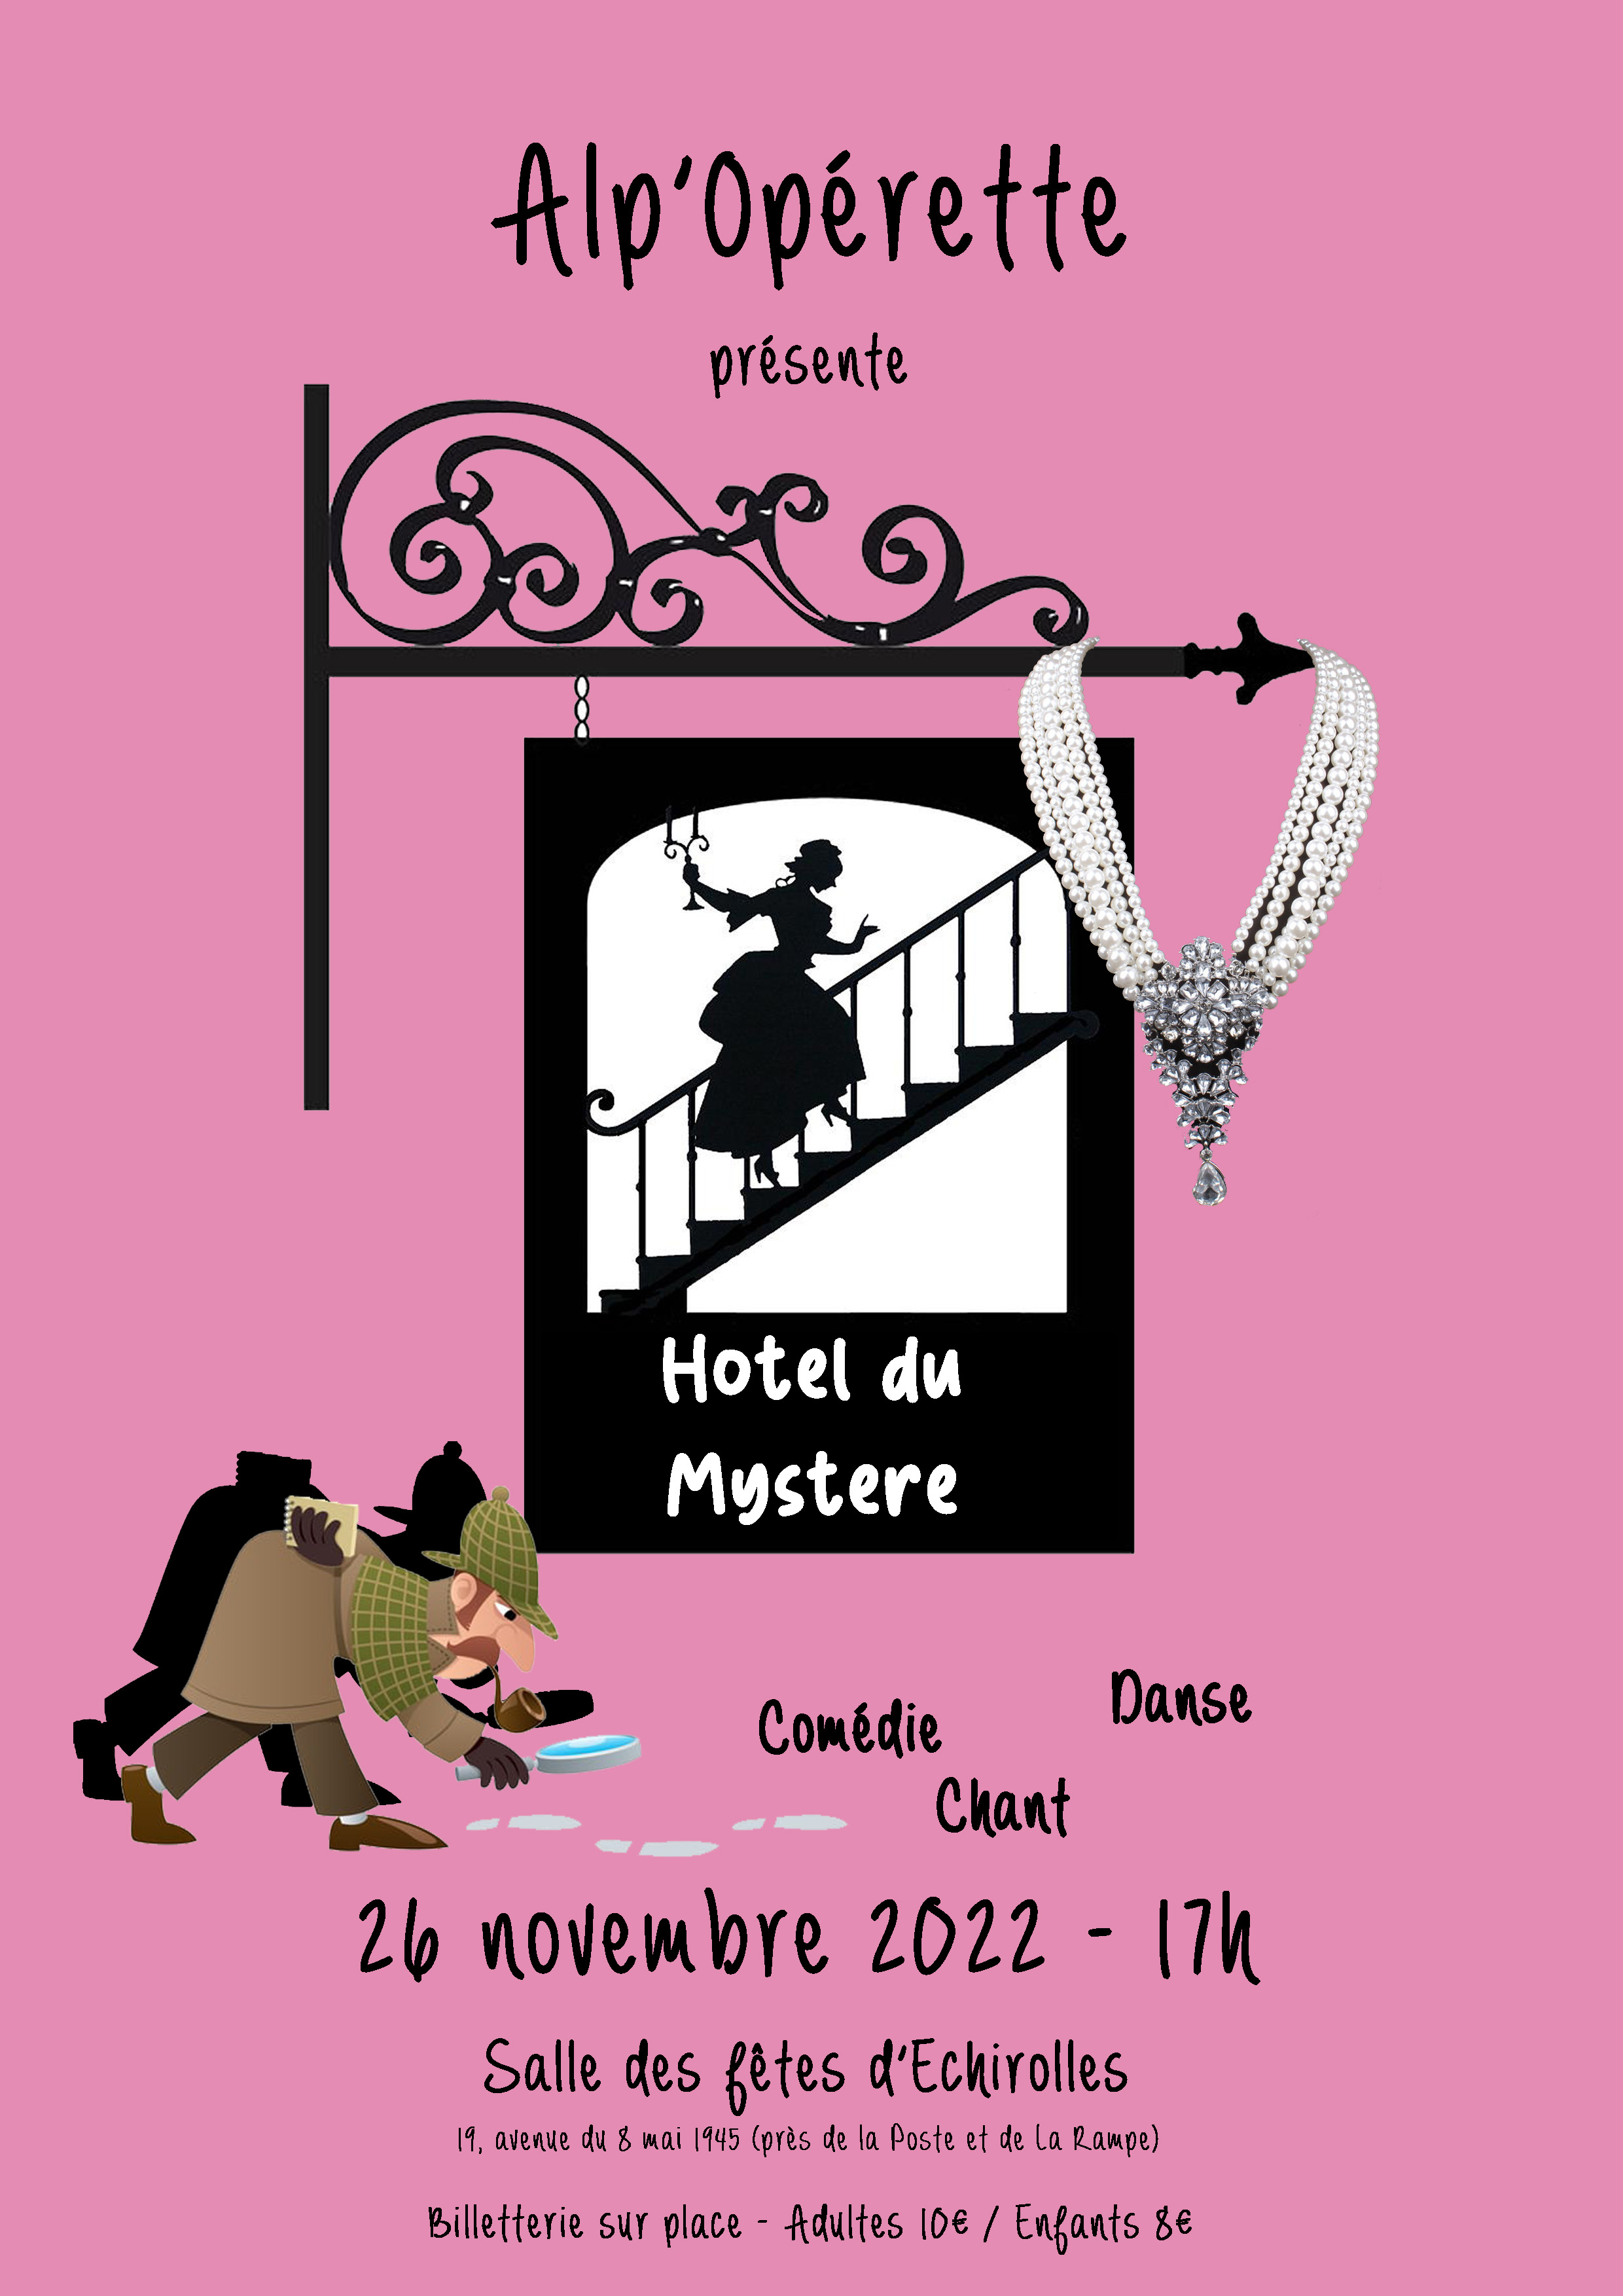 Affiche du spectacle "Hôtel du Mystère" par Alp'Operette